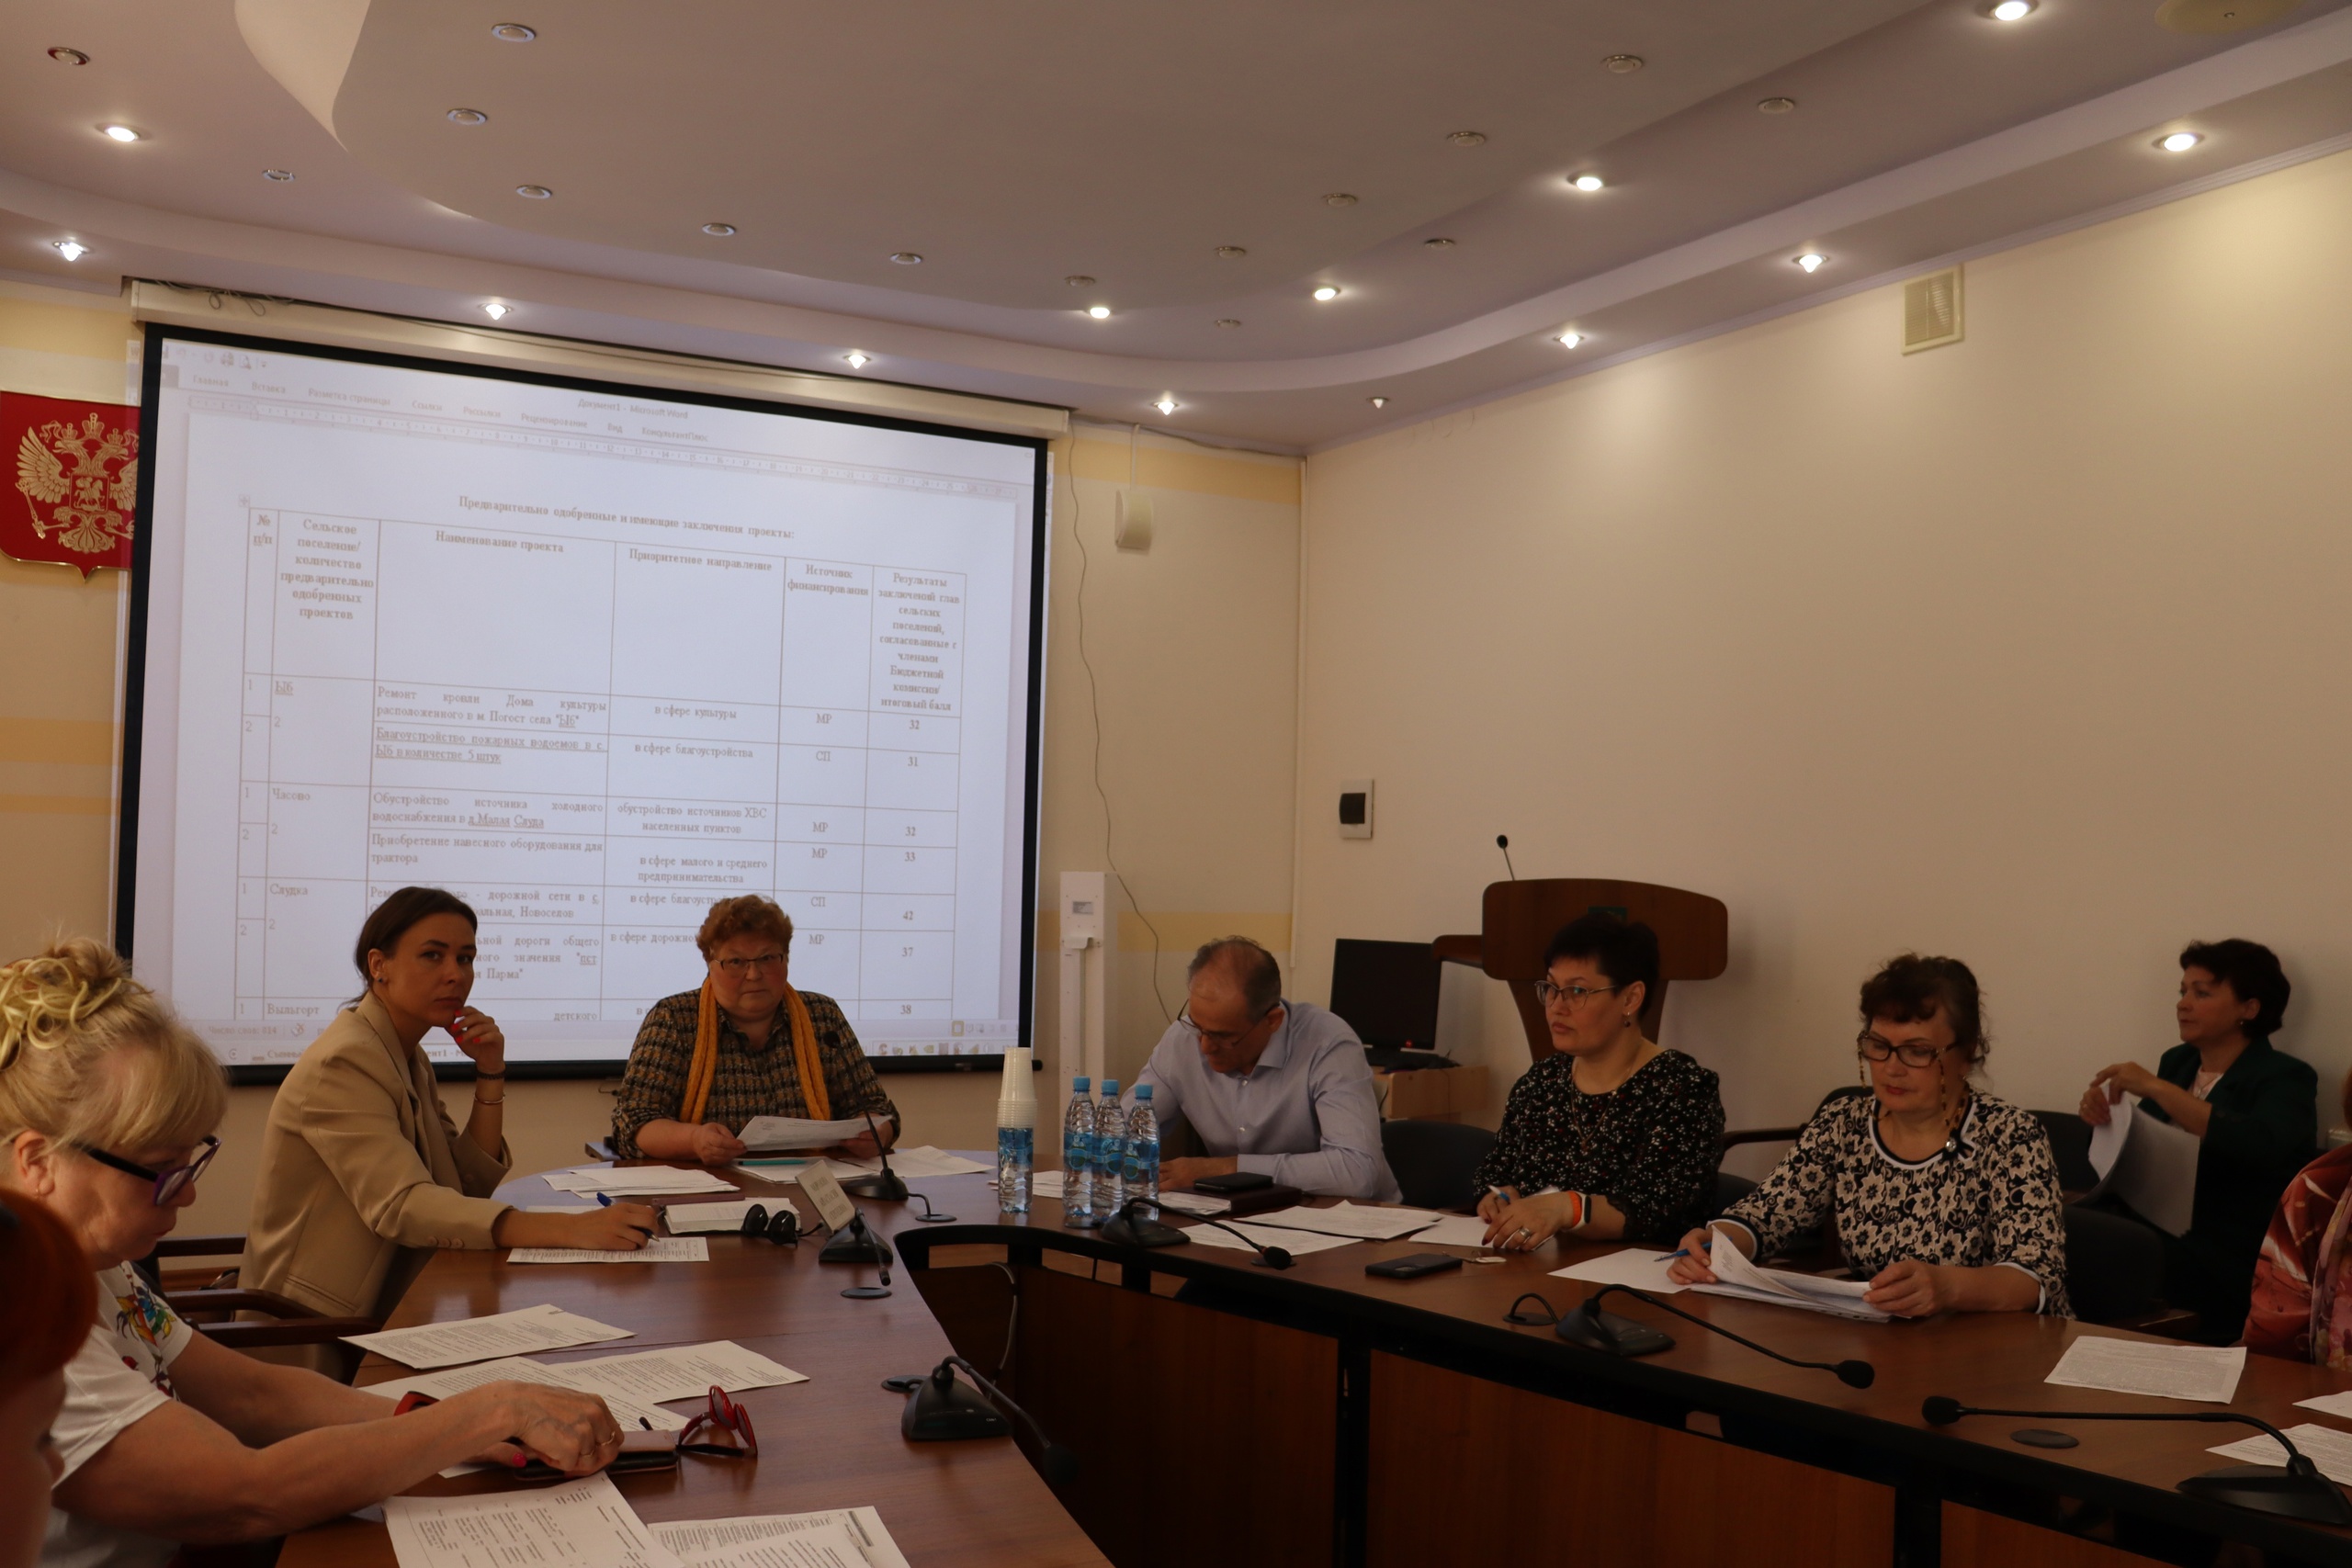 В Сыктывдинском районе состоялось заседание бюджетной комиссии по отбору народных проектов на 2024 год.